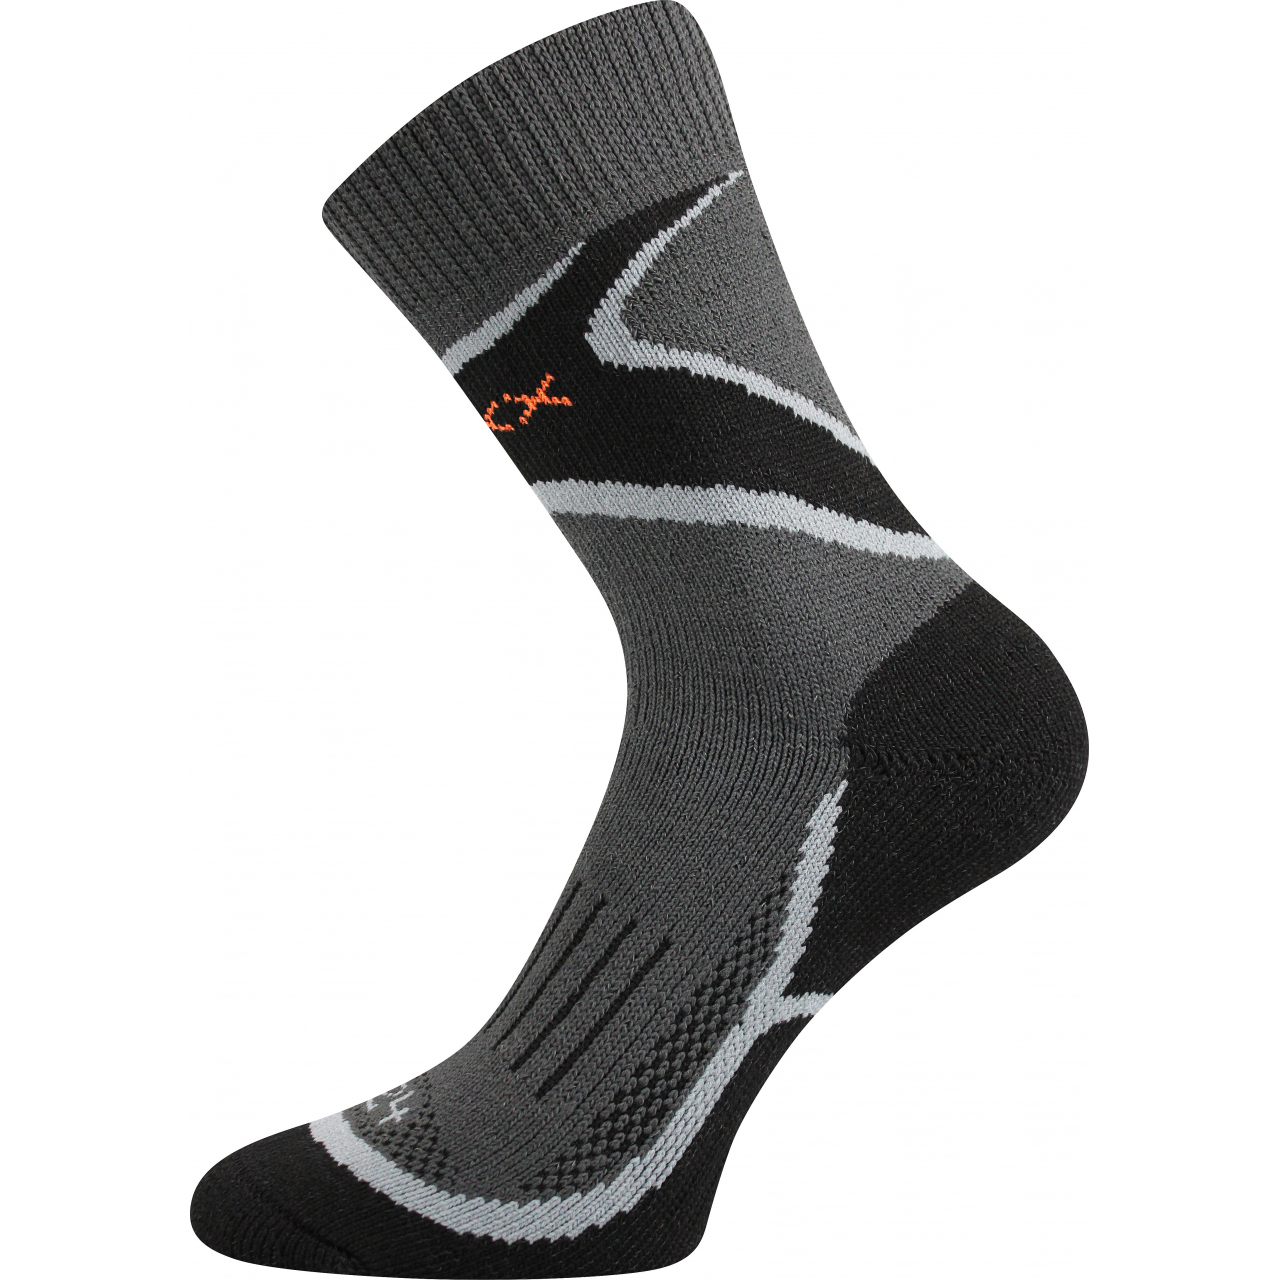 Ponožky unisex sportovní trekingové Voxx Inpulse - tmavě šedé-černé, 35-37